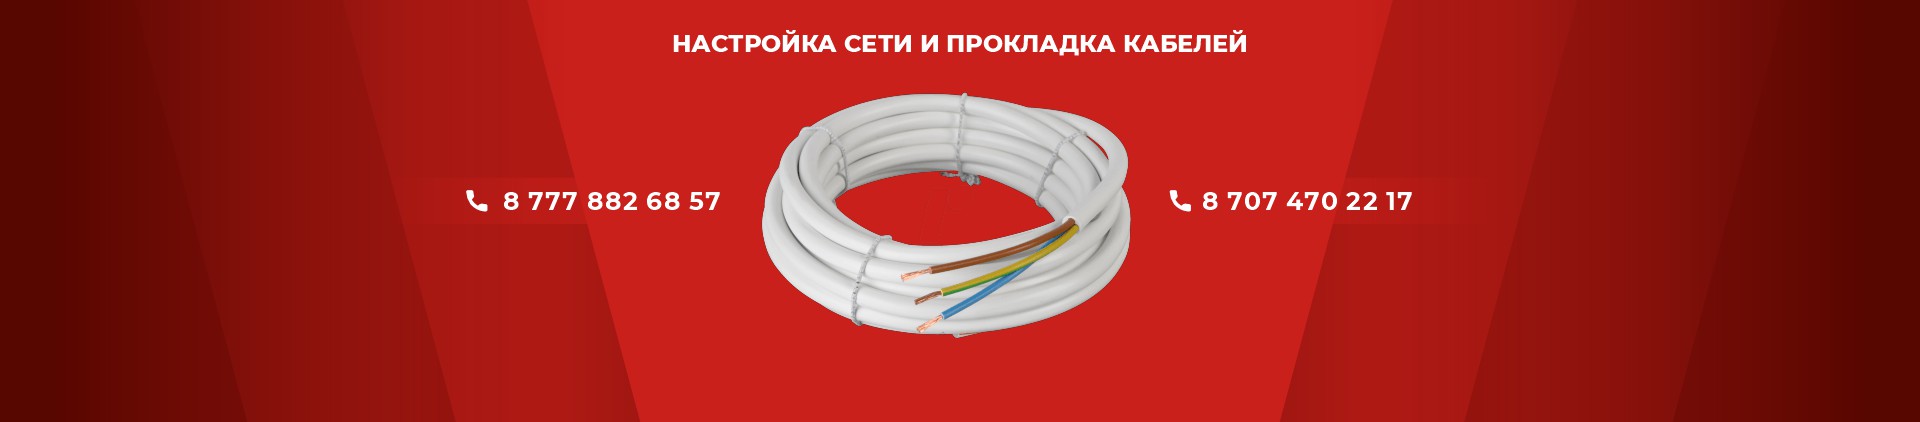 Настройка сети и прокладка кабелей в Астане